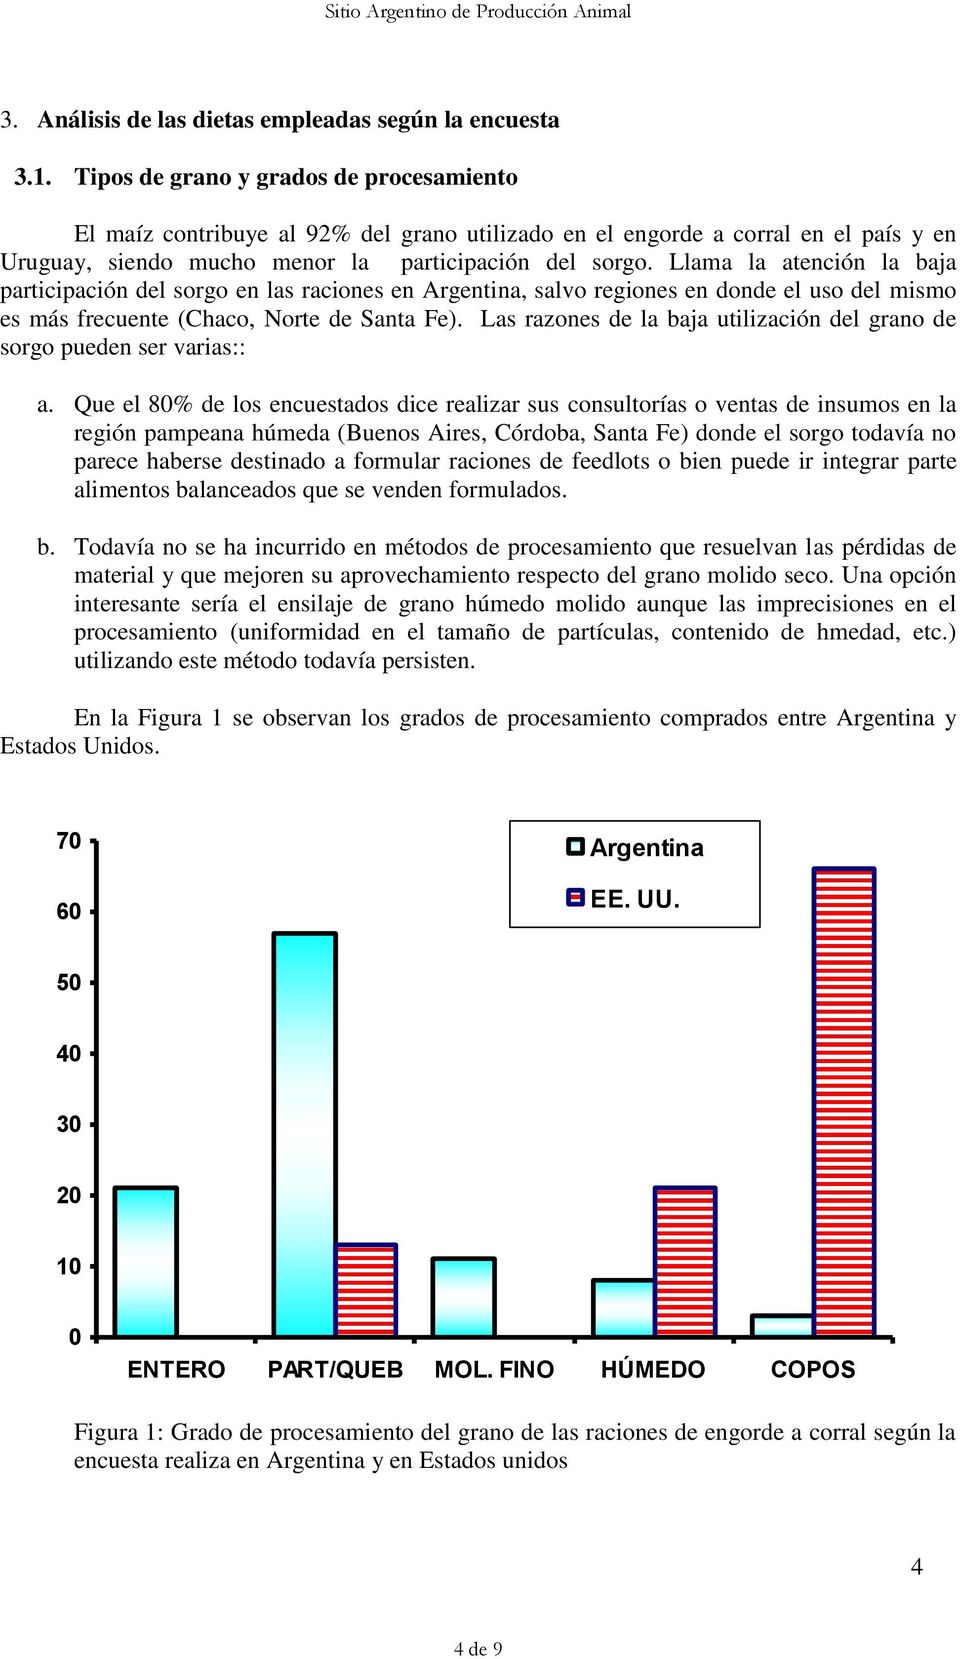 Llama la atención la baja participación del sorgo en las raciones en Argentina, salvo regiones en donde el uso del mismo es más frecuente (Chaco, Norte de Santa Fe).